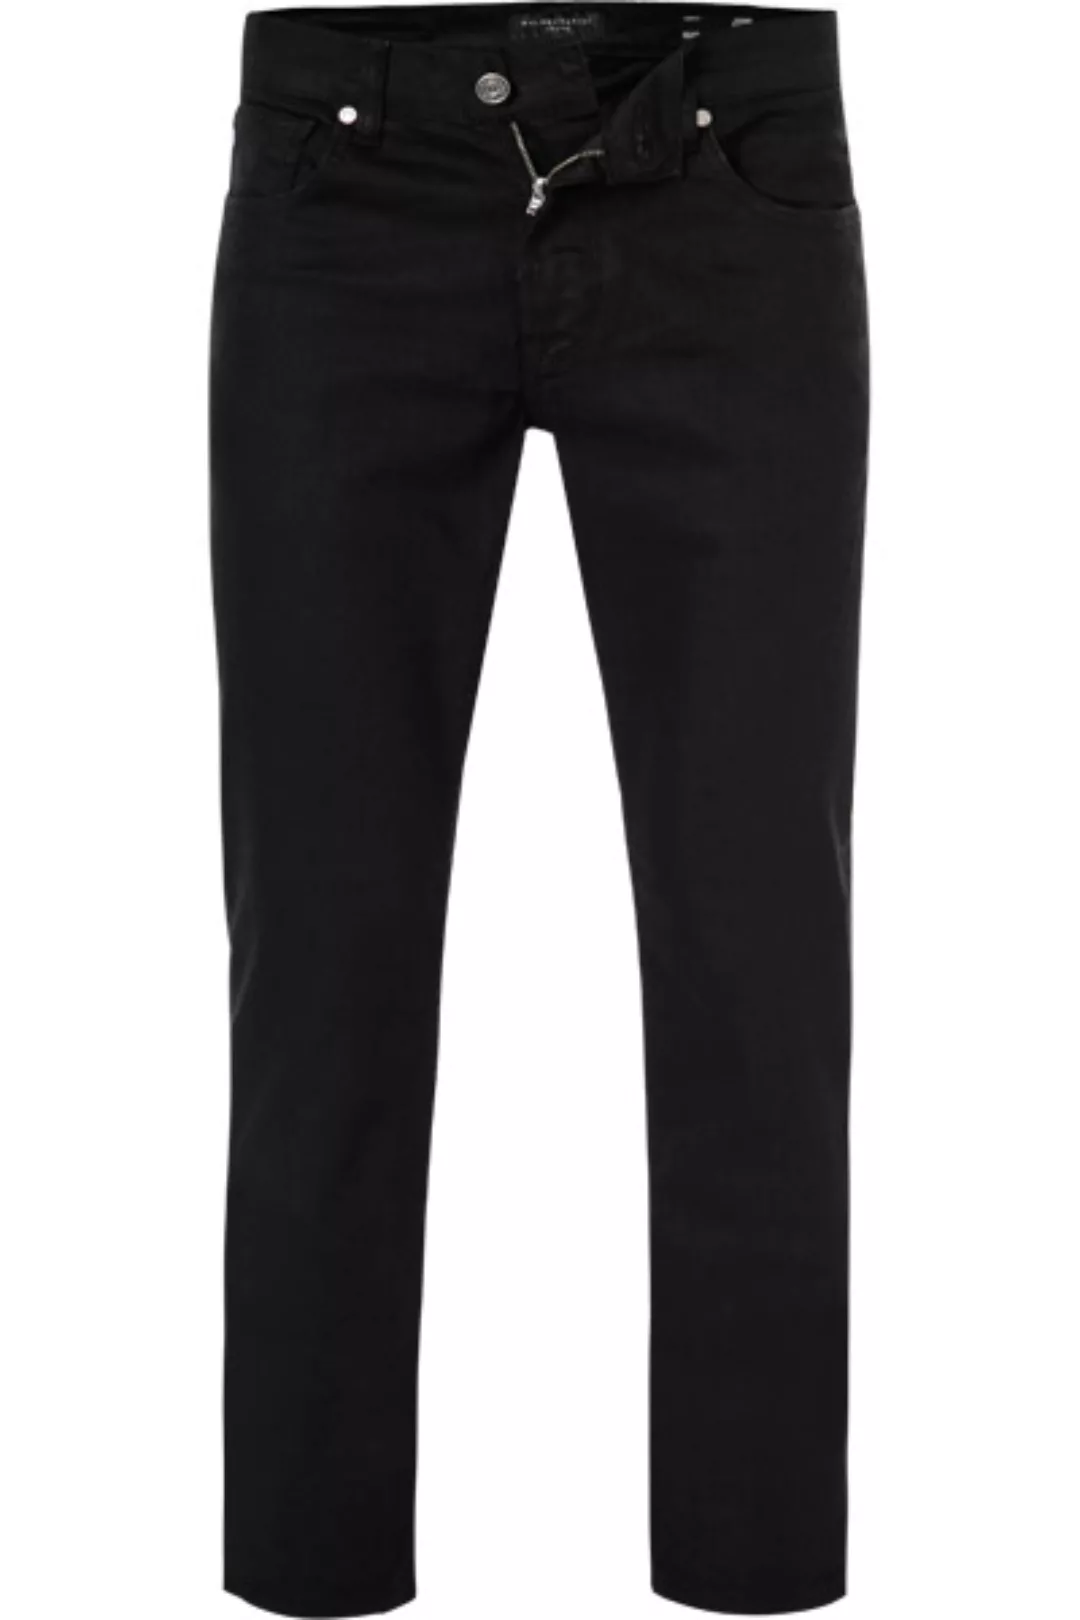 BALDESSARINI Jeans schwarz B1 16511.1488/9800 günstig online kaufen